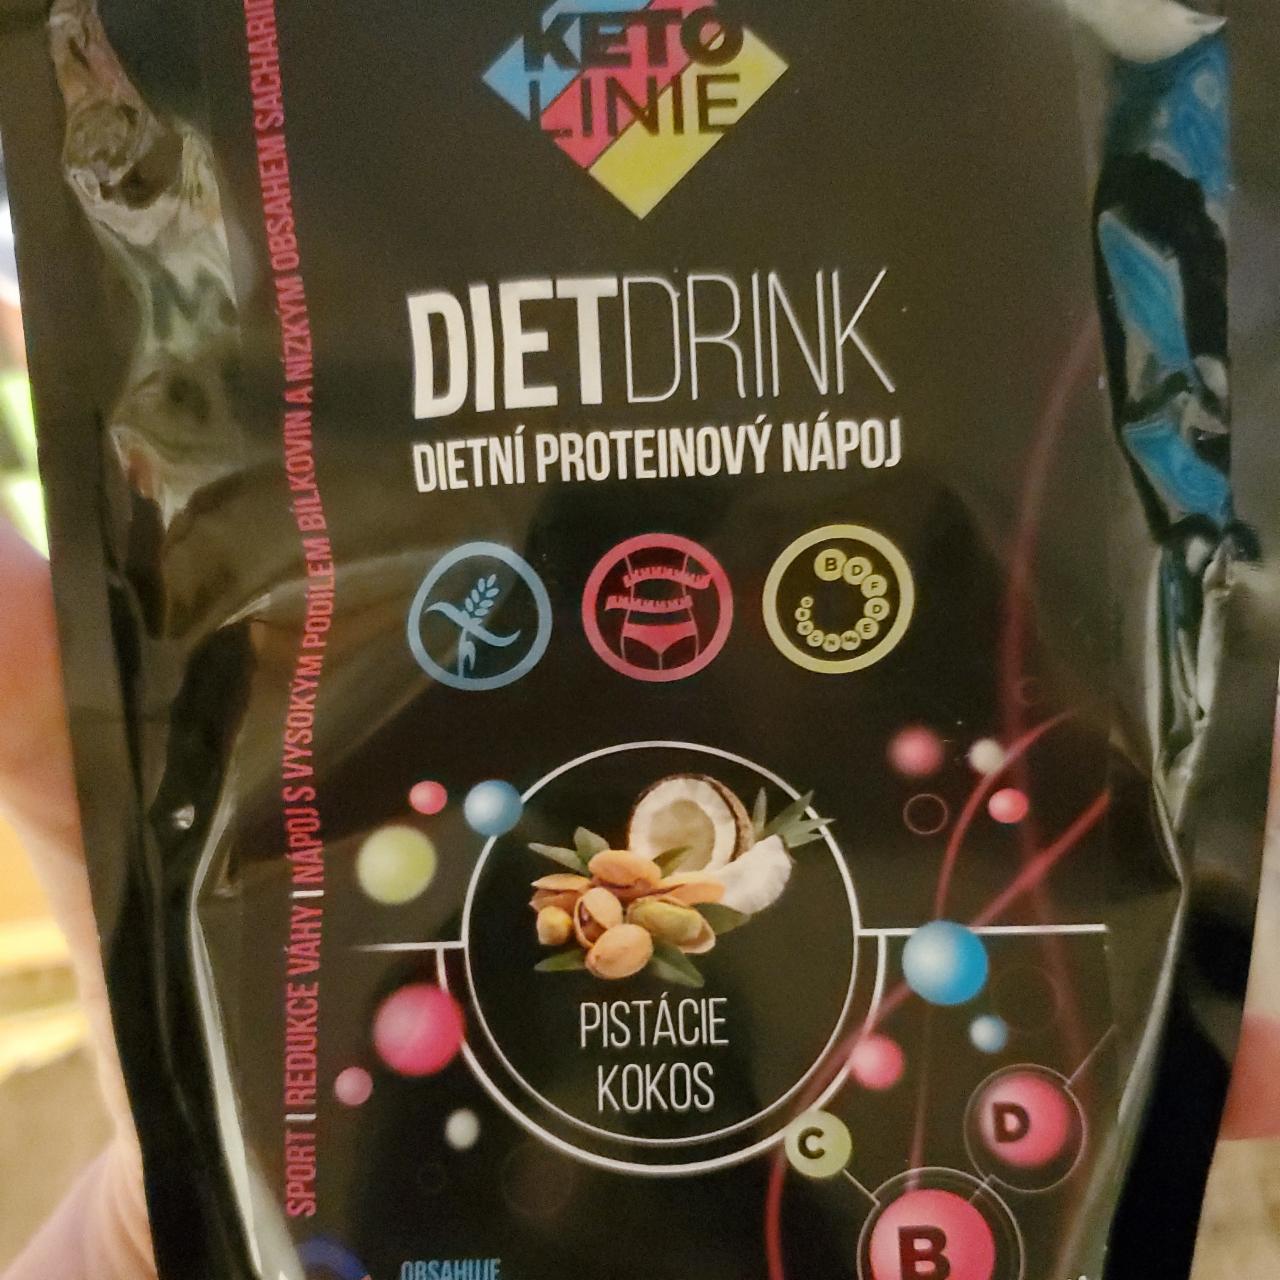 Fotografie - DietDrink Dietní proteinový nápoj pistácie kokos KetoLinie